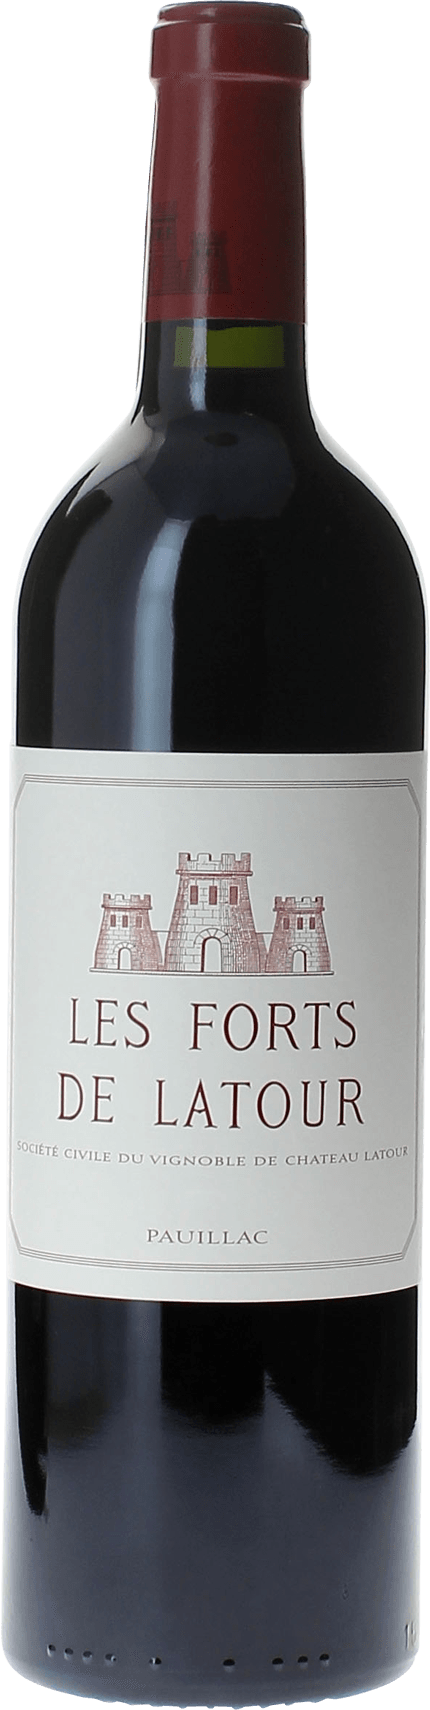 Les forts de latour 1995 2me vin de LATOUR Pauillac, Bordeaux rouge